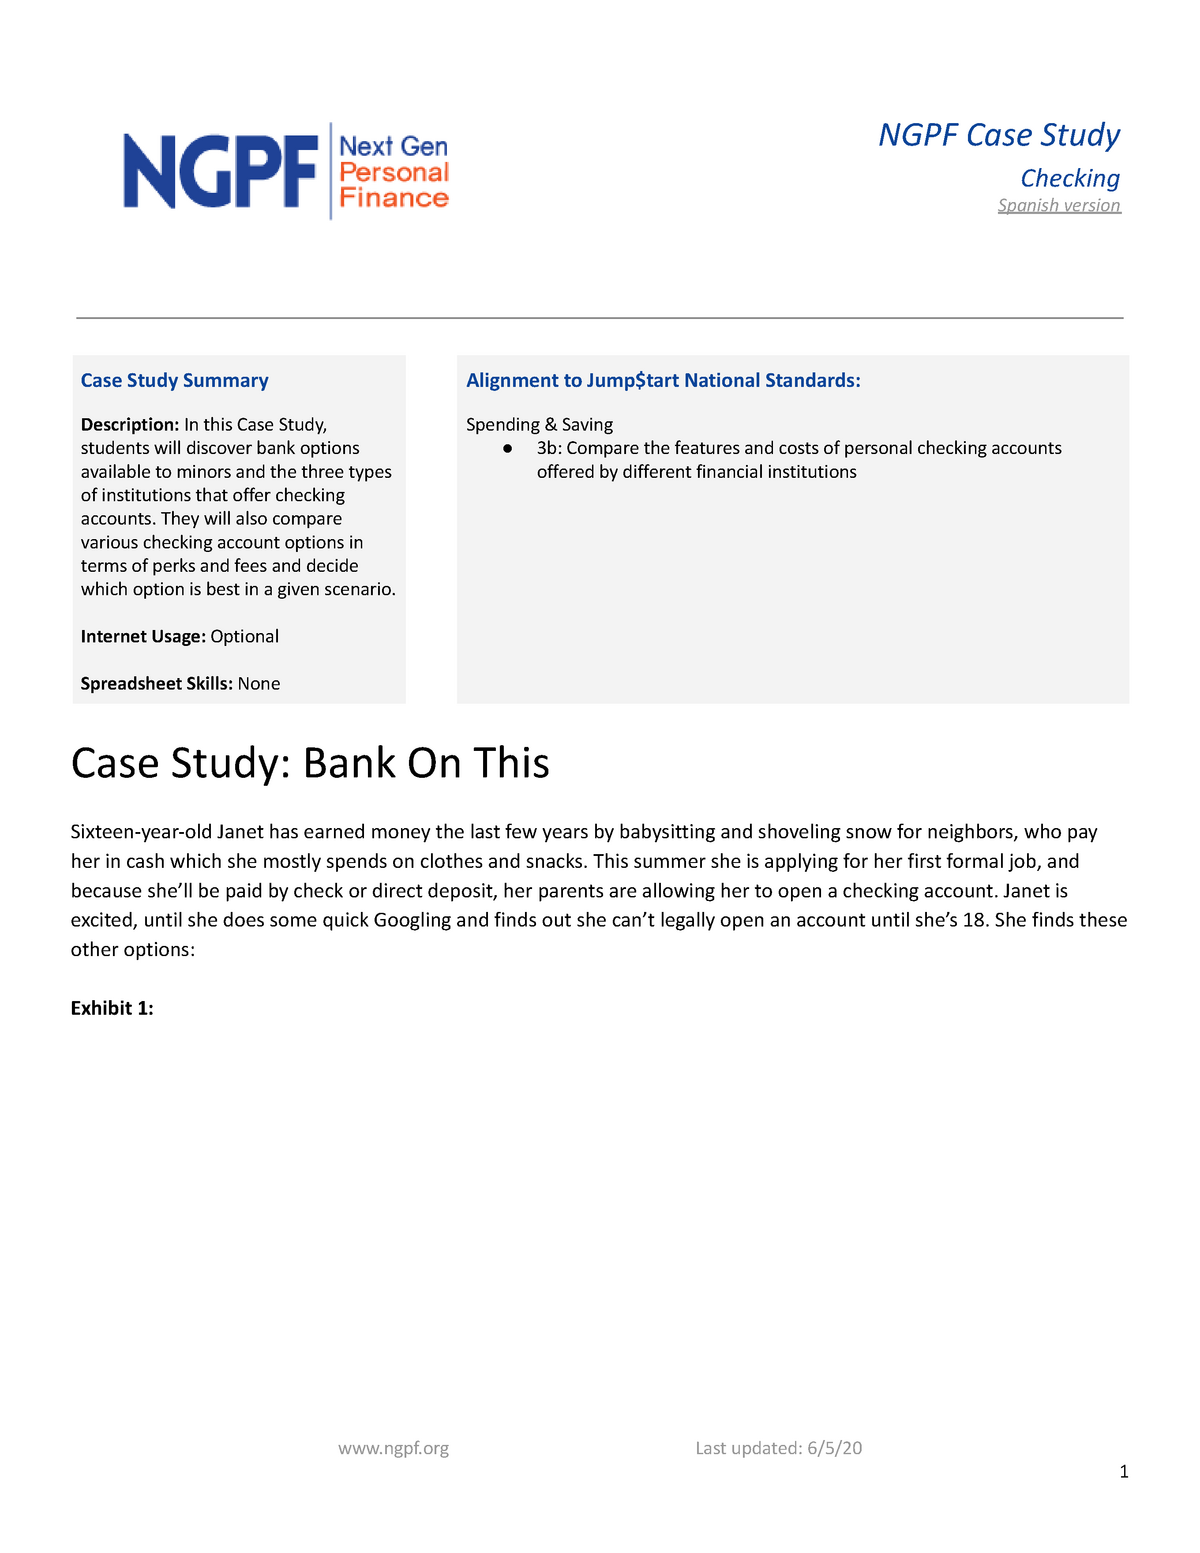 ngpf case study budgeting 1 answer key